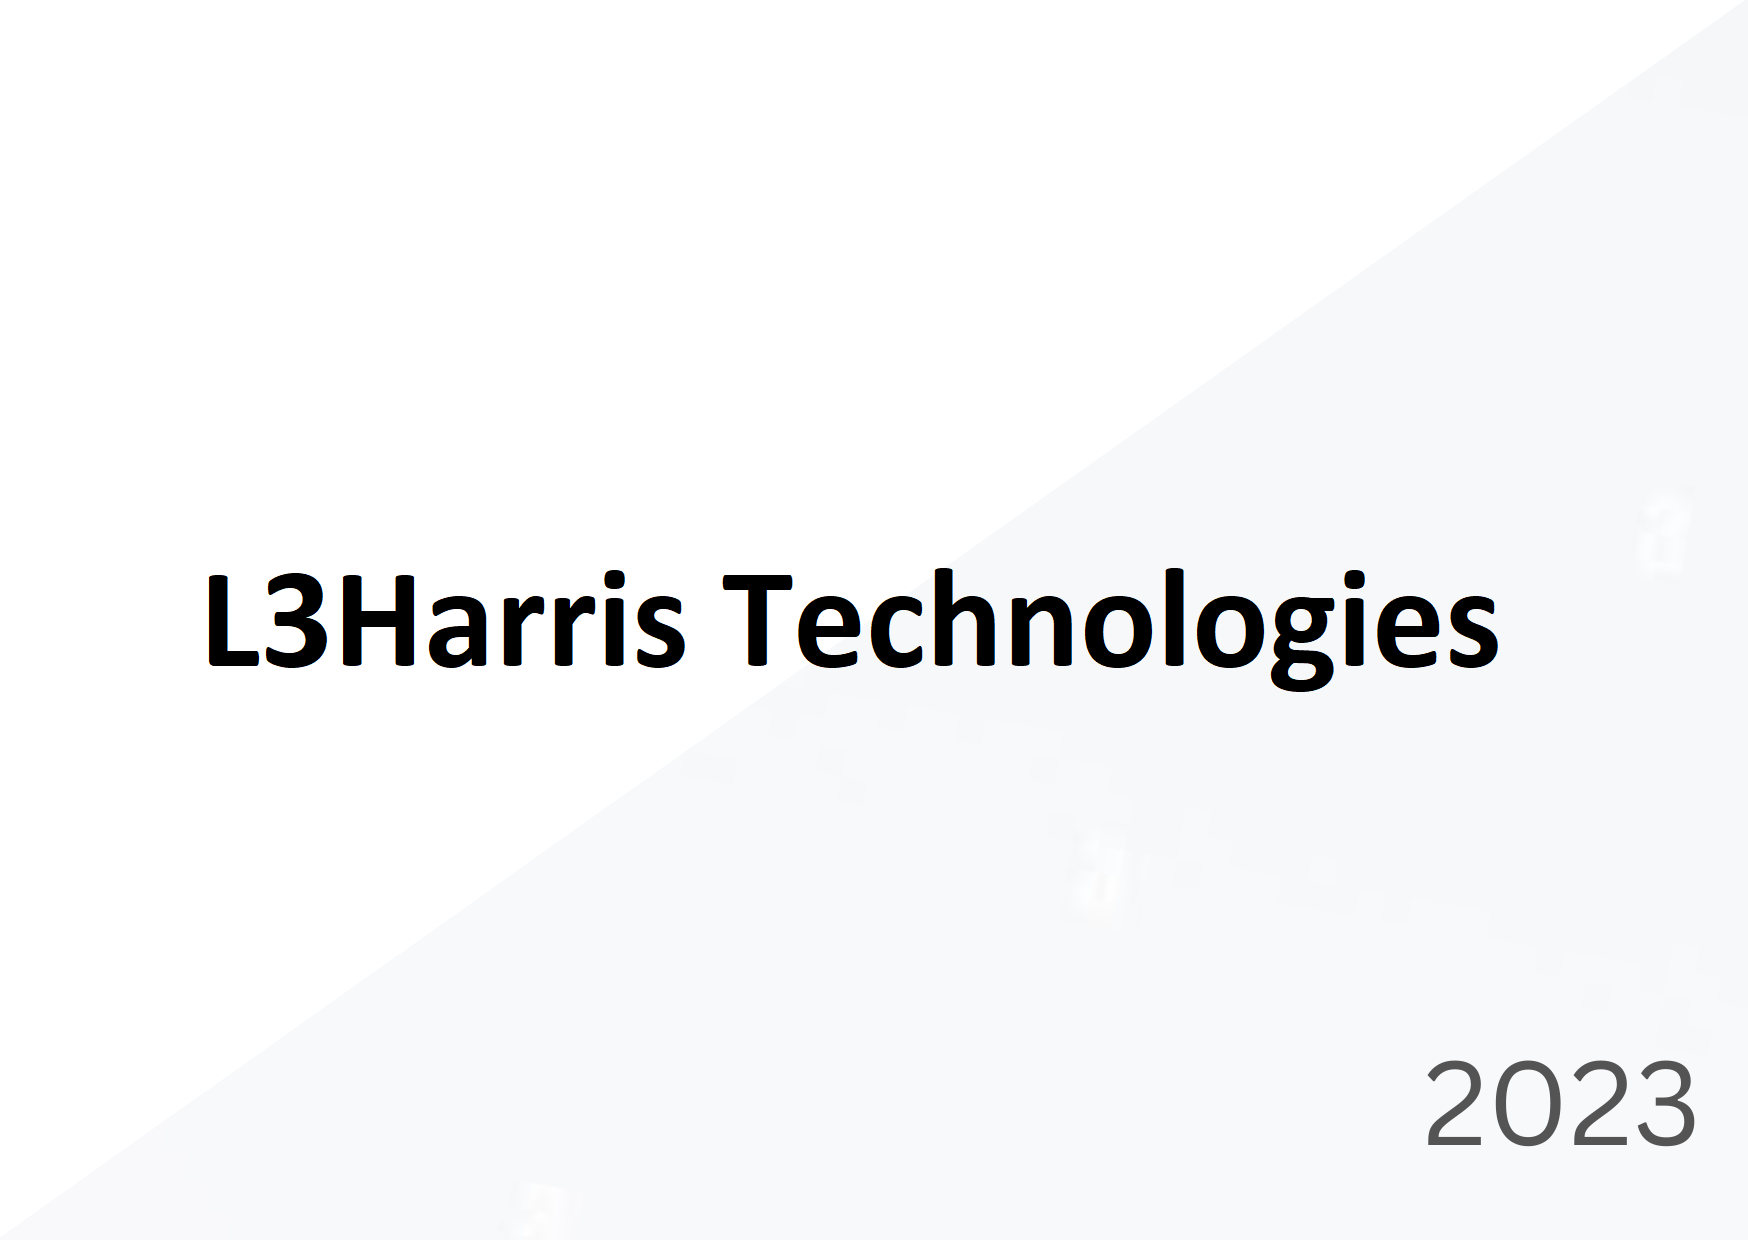 Premios a la excelencia en tecnología naval 2023: L3Harris Technologies